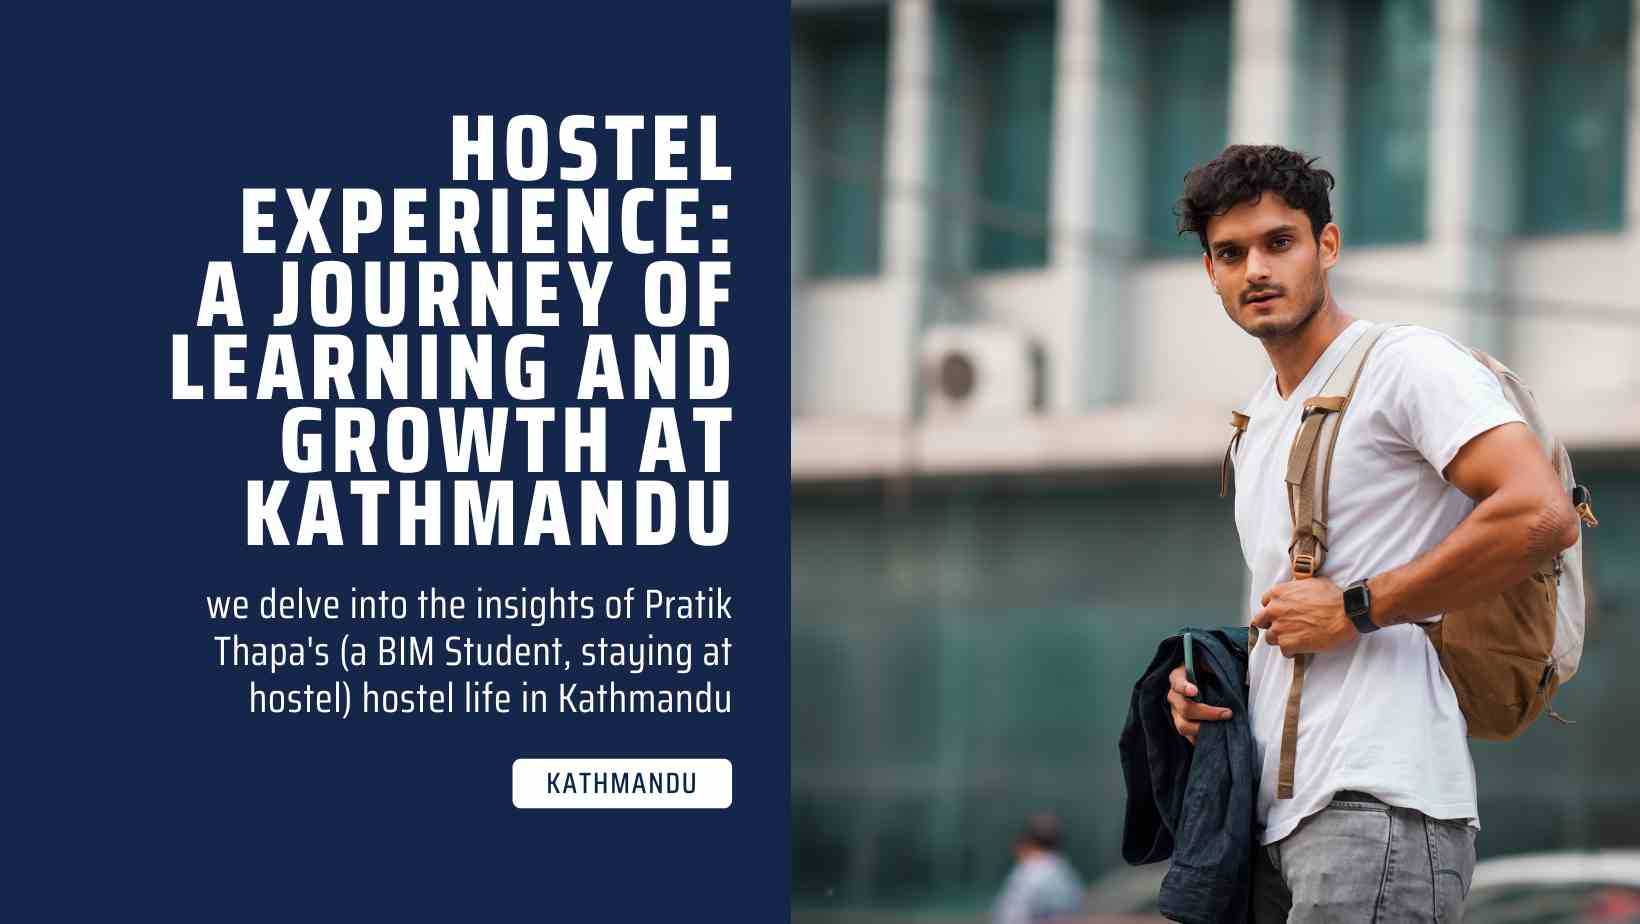 Hostel Experience: What is it like living in Kathmandu in a hostel?